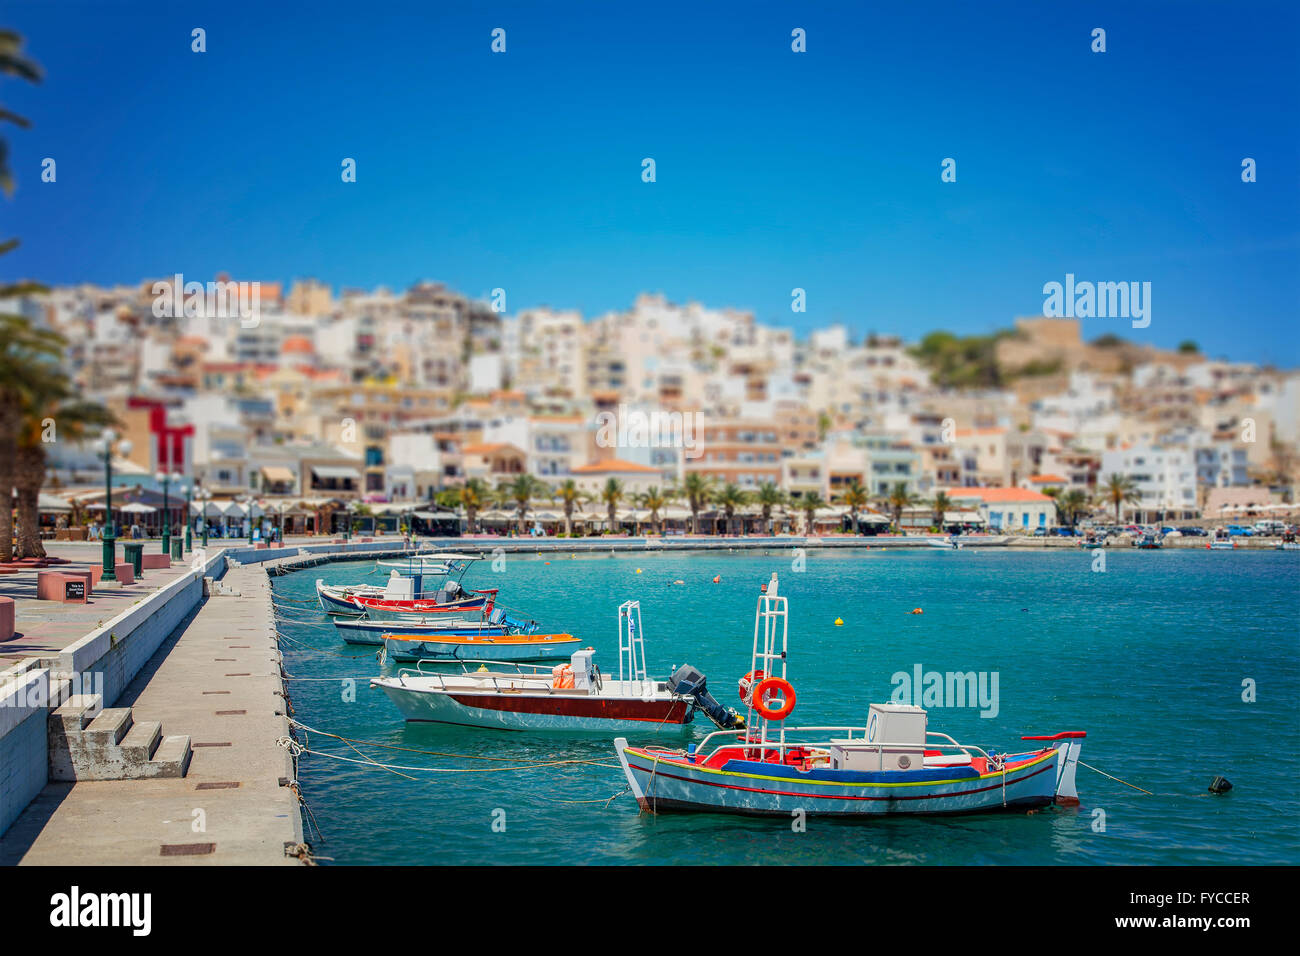 Image de la ville balnéaire de Sitia en Crète, Grèce. Banque D'Images